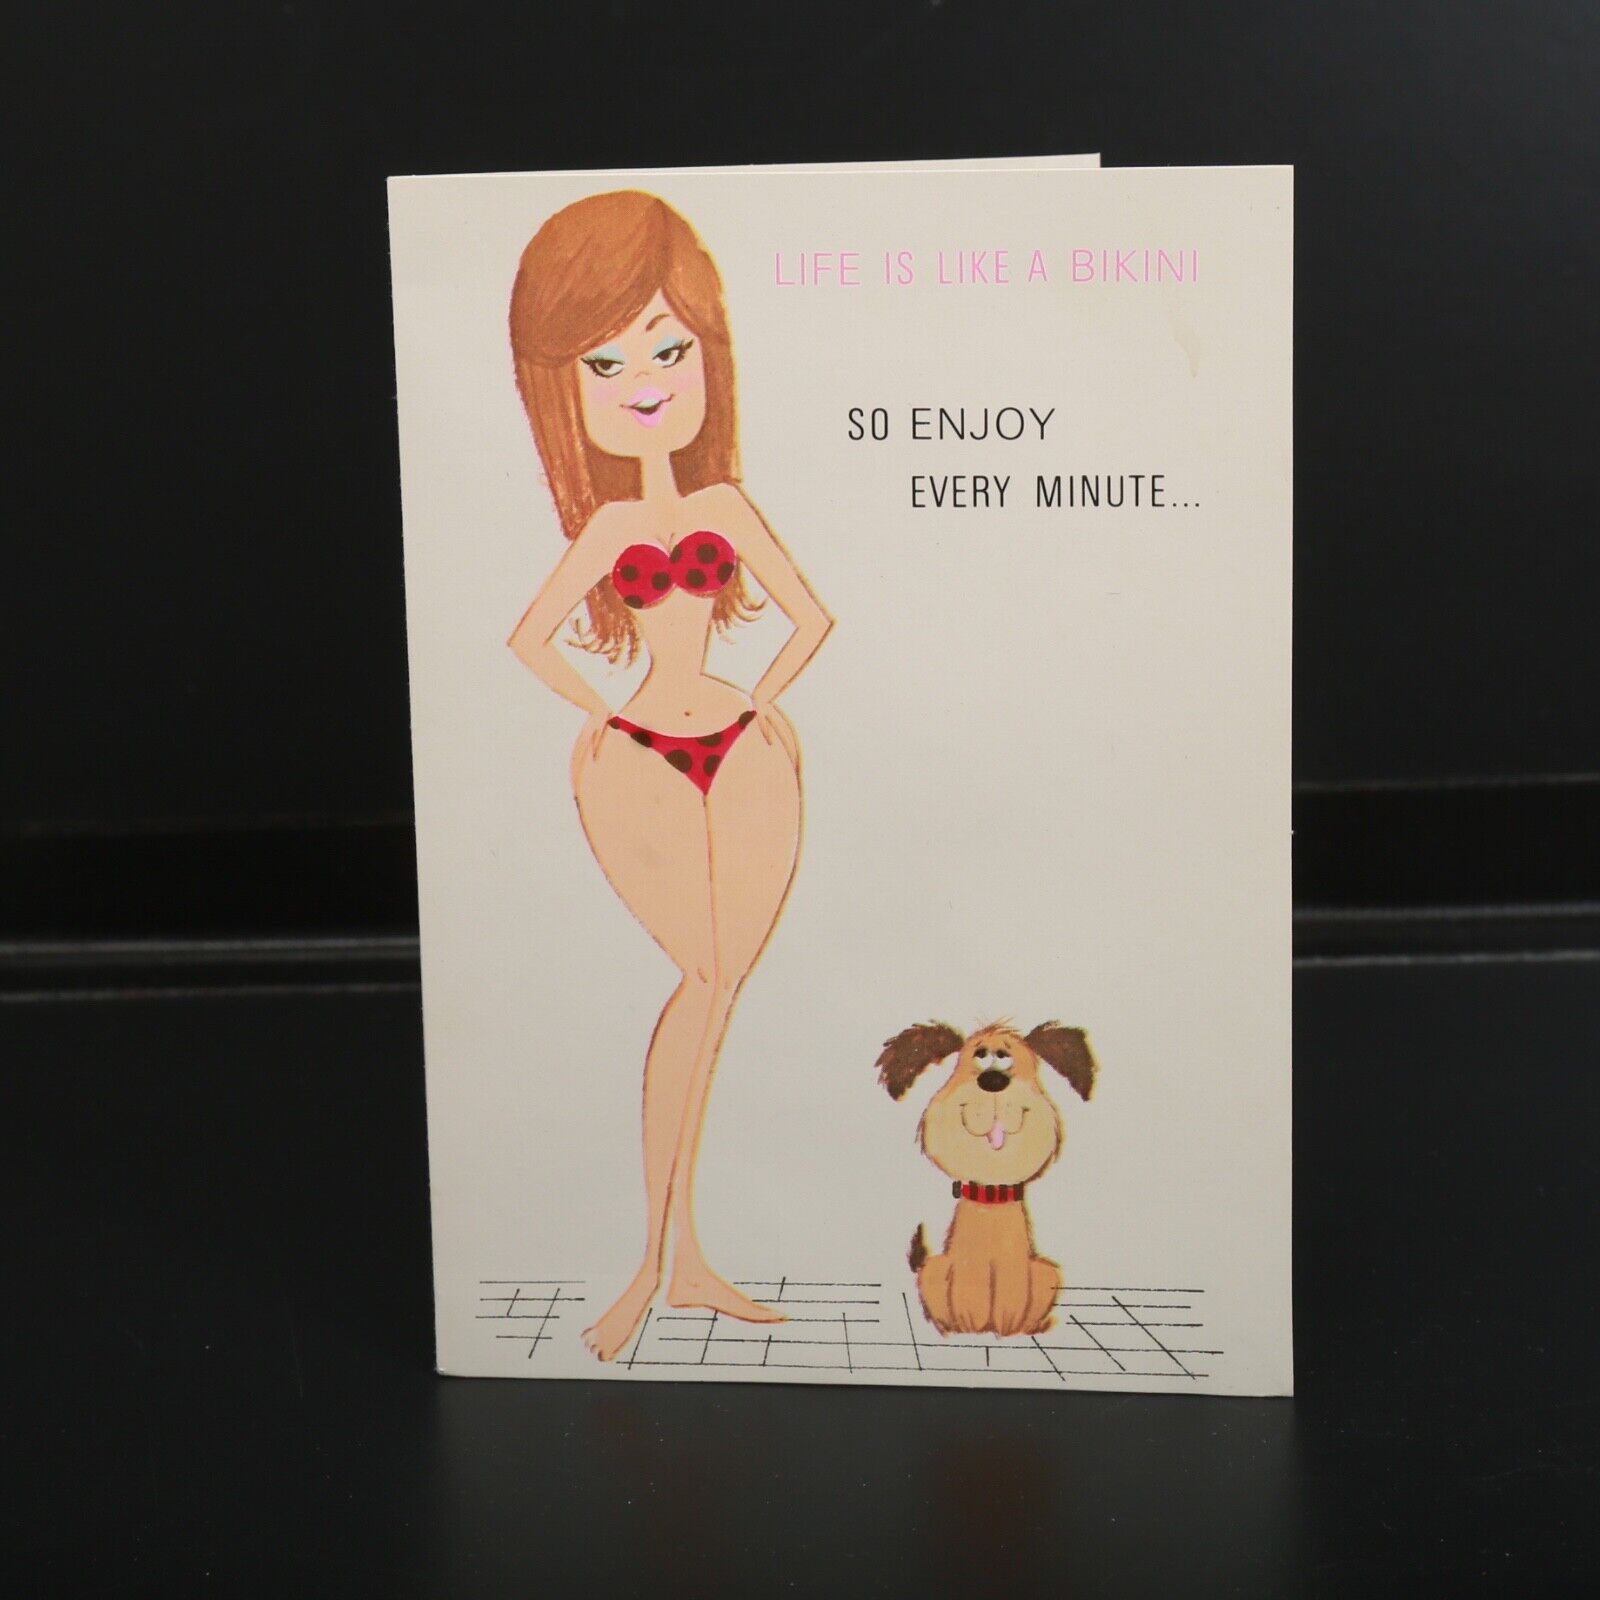 Buzza Cardozo Birthday Card Woman Polka Dot Bikini Dog Adult Humor Ephemera Vtg